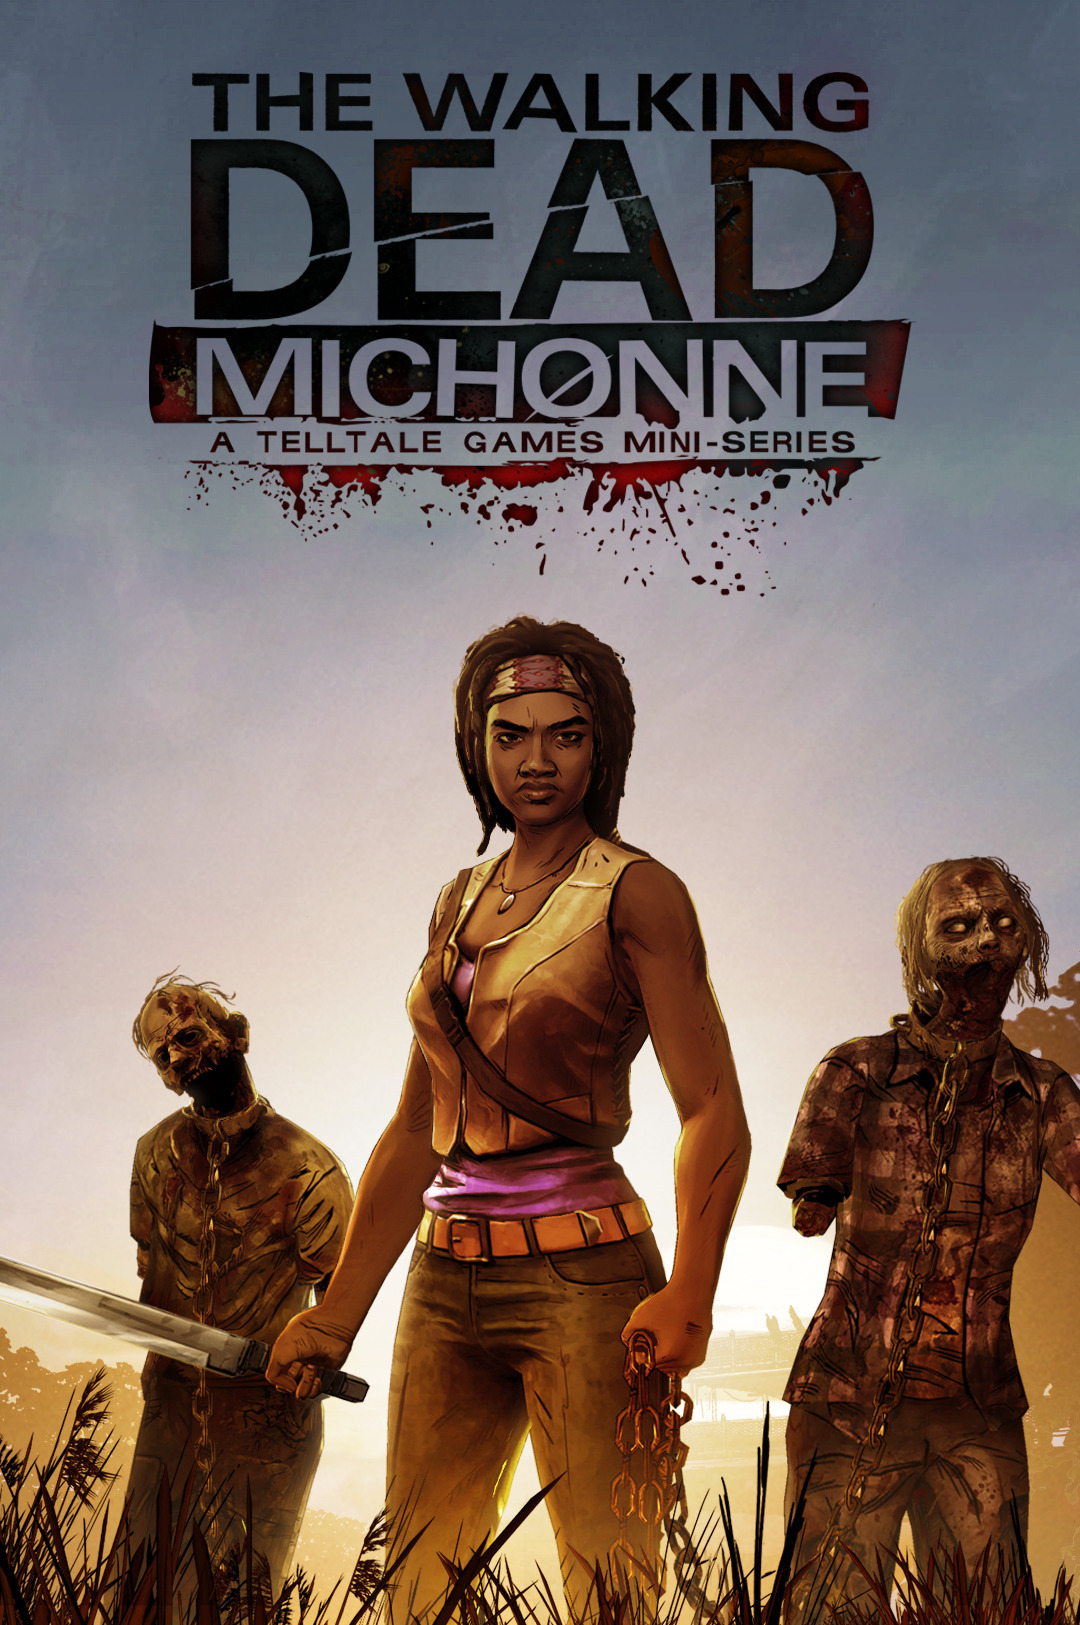 The Walking Dead Michonne PC